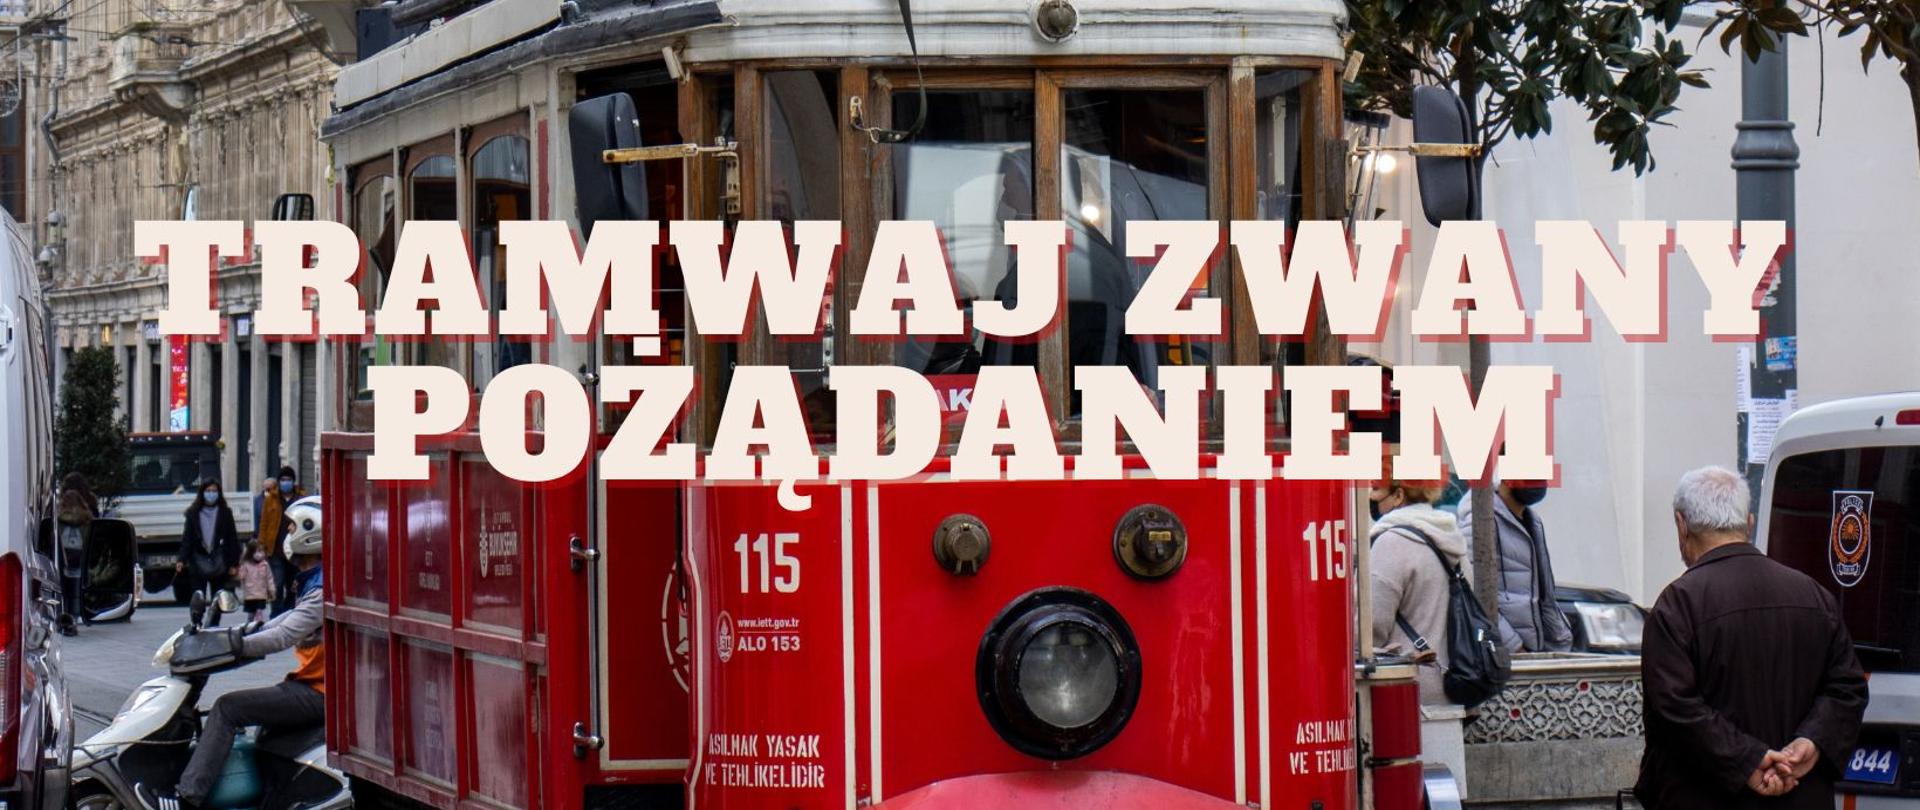 Starodawny czerwony tramwaj